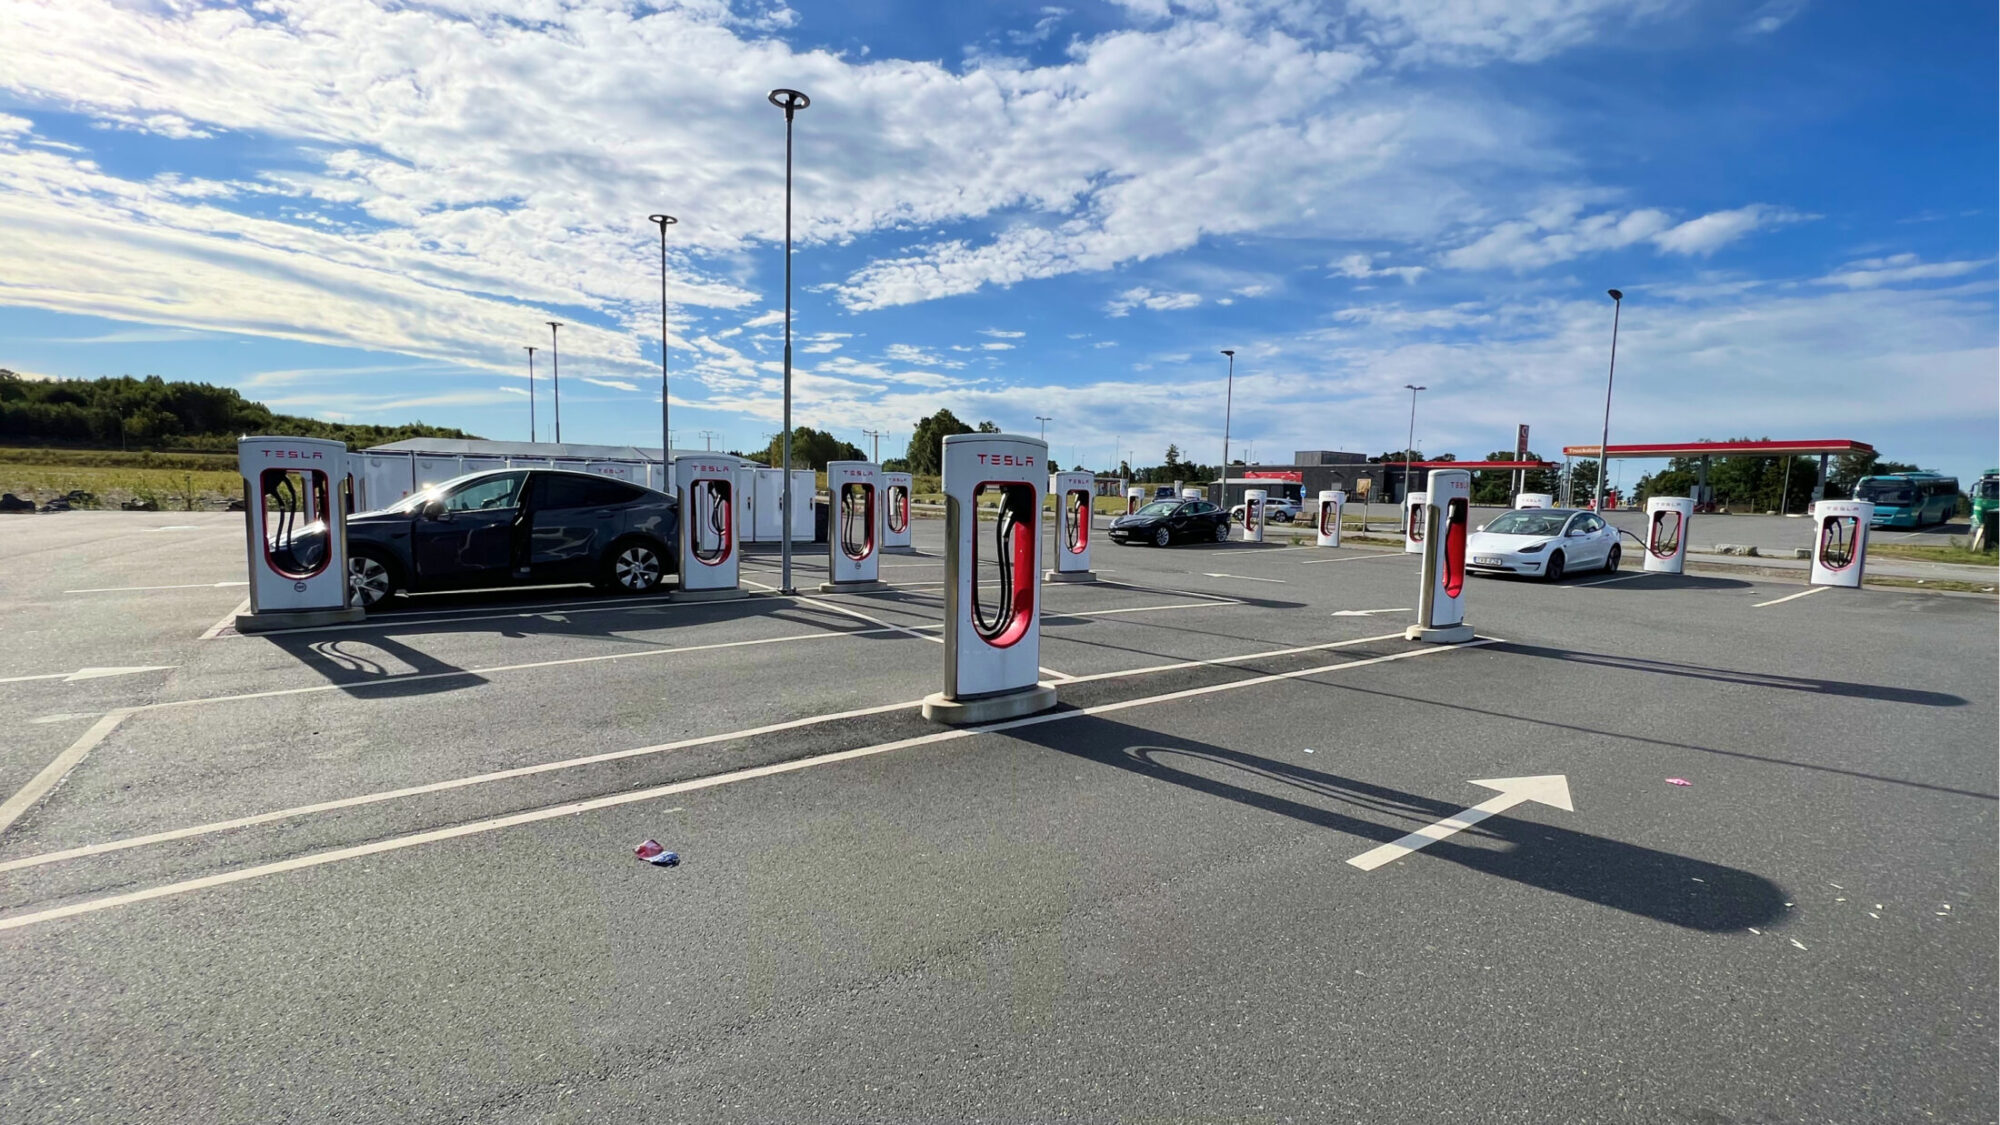 Supercharging a Tesla Model Y